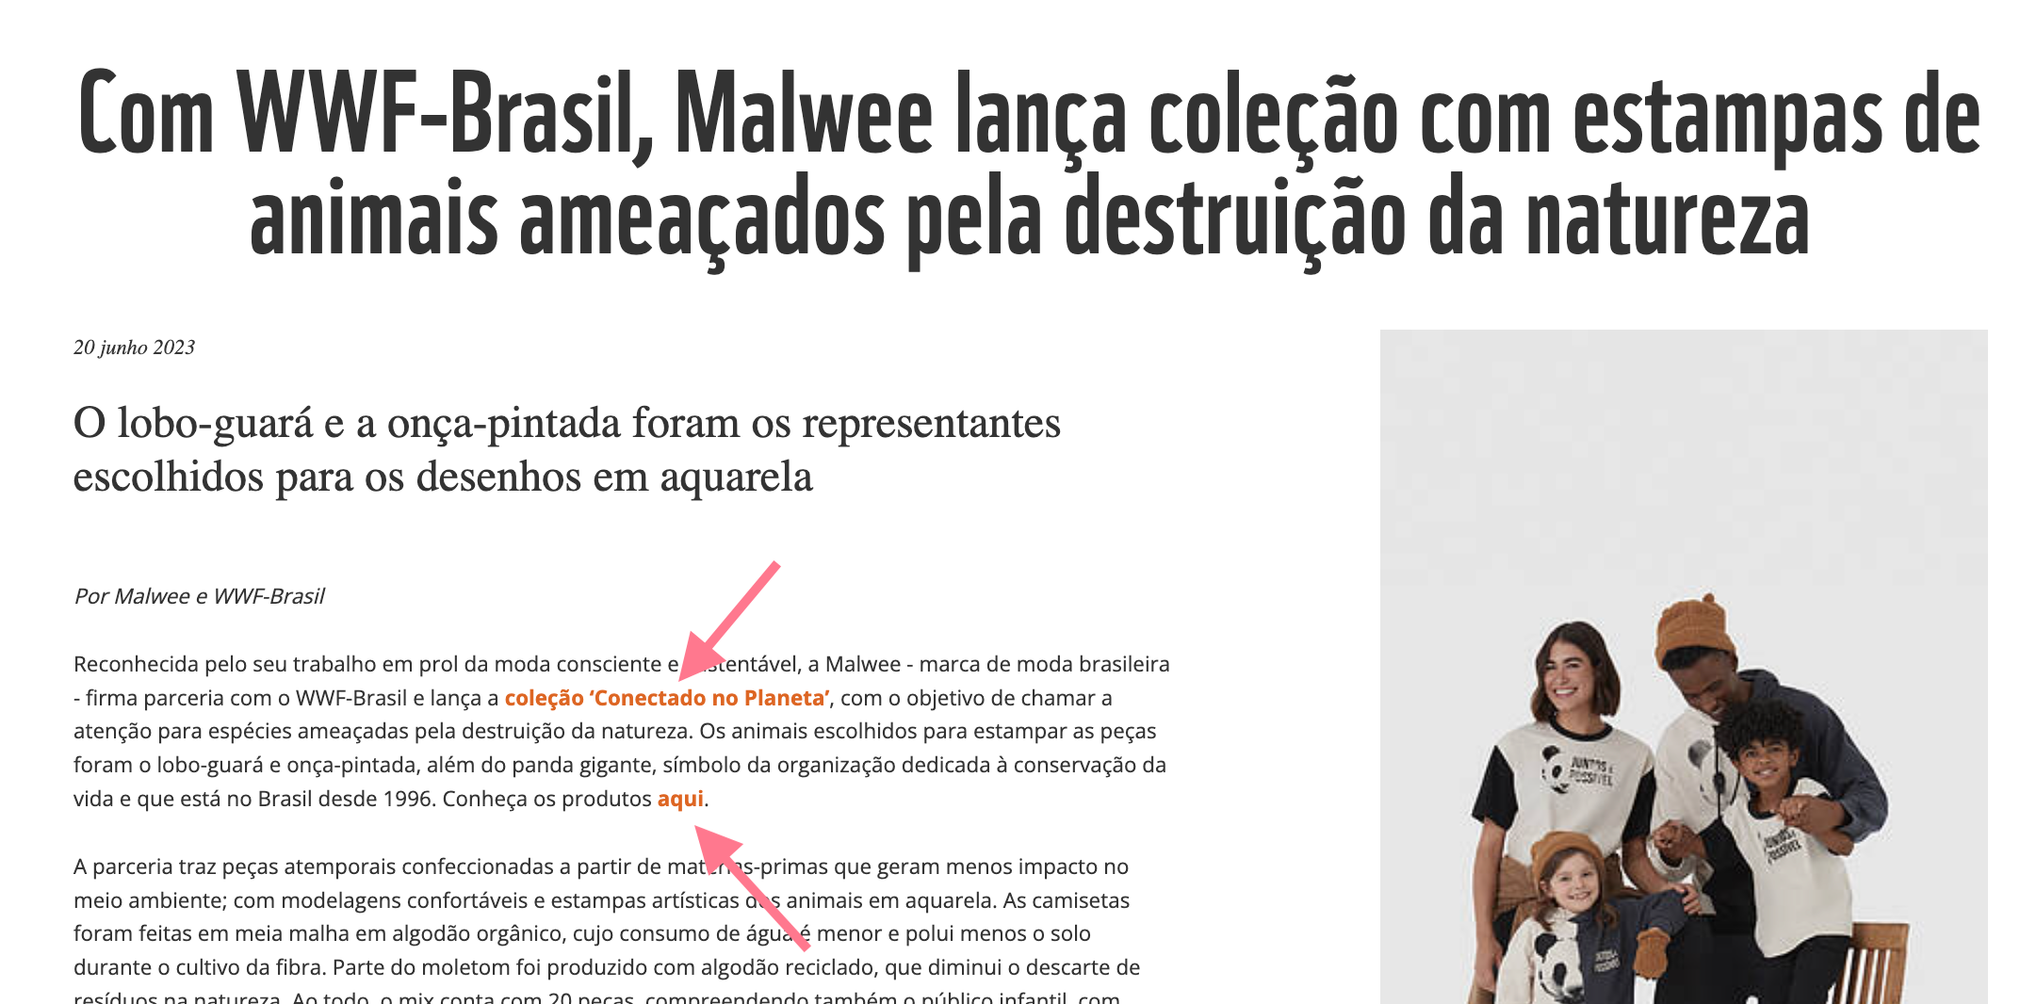 Um exemplo de backlinks na página WWF-Brasil